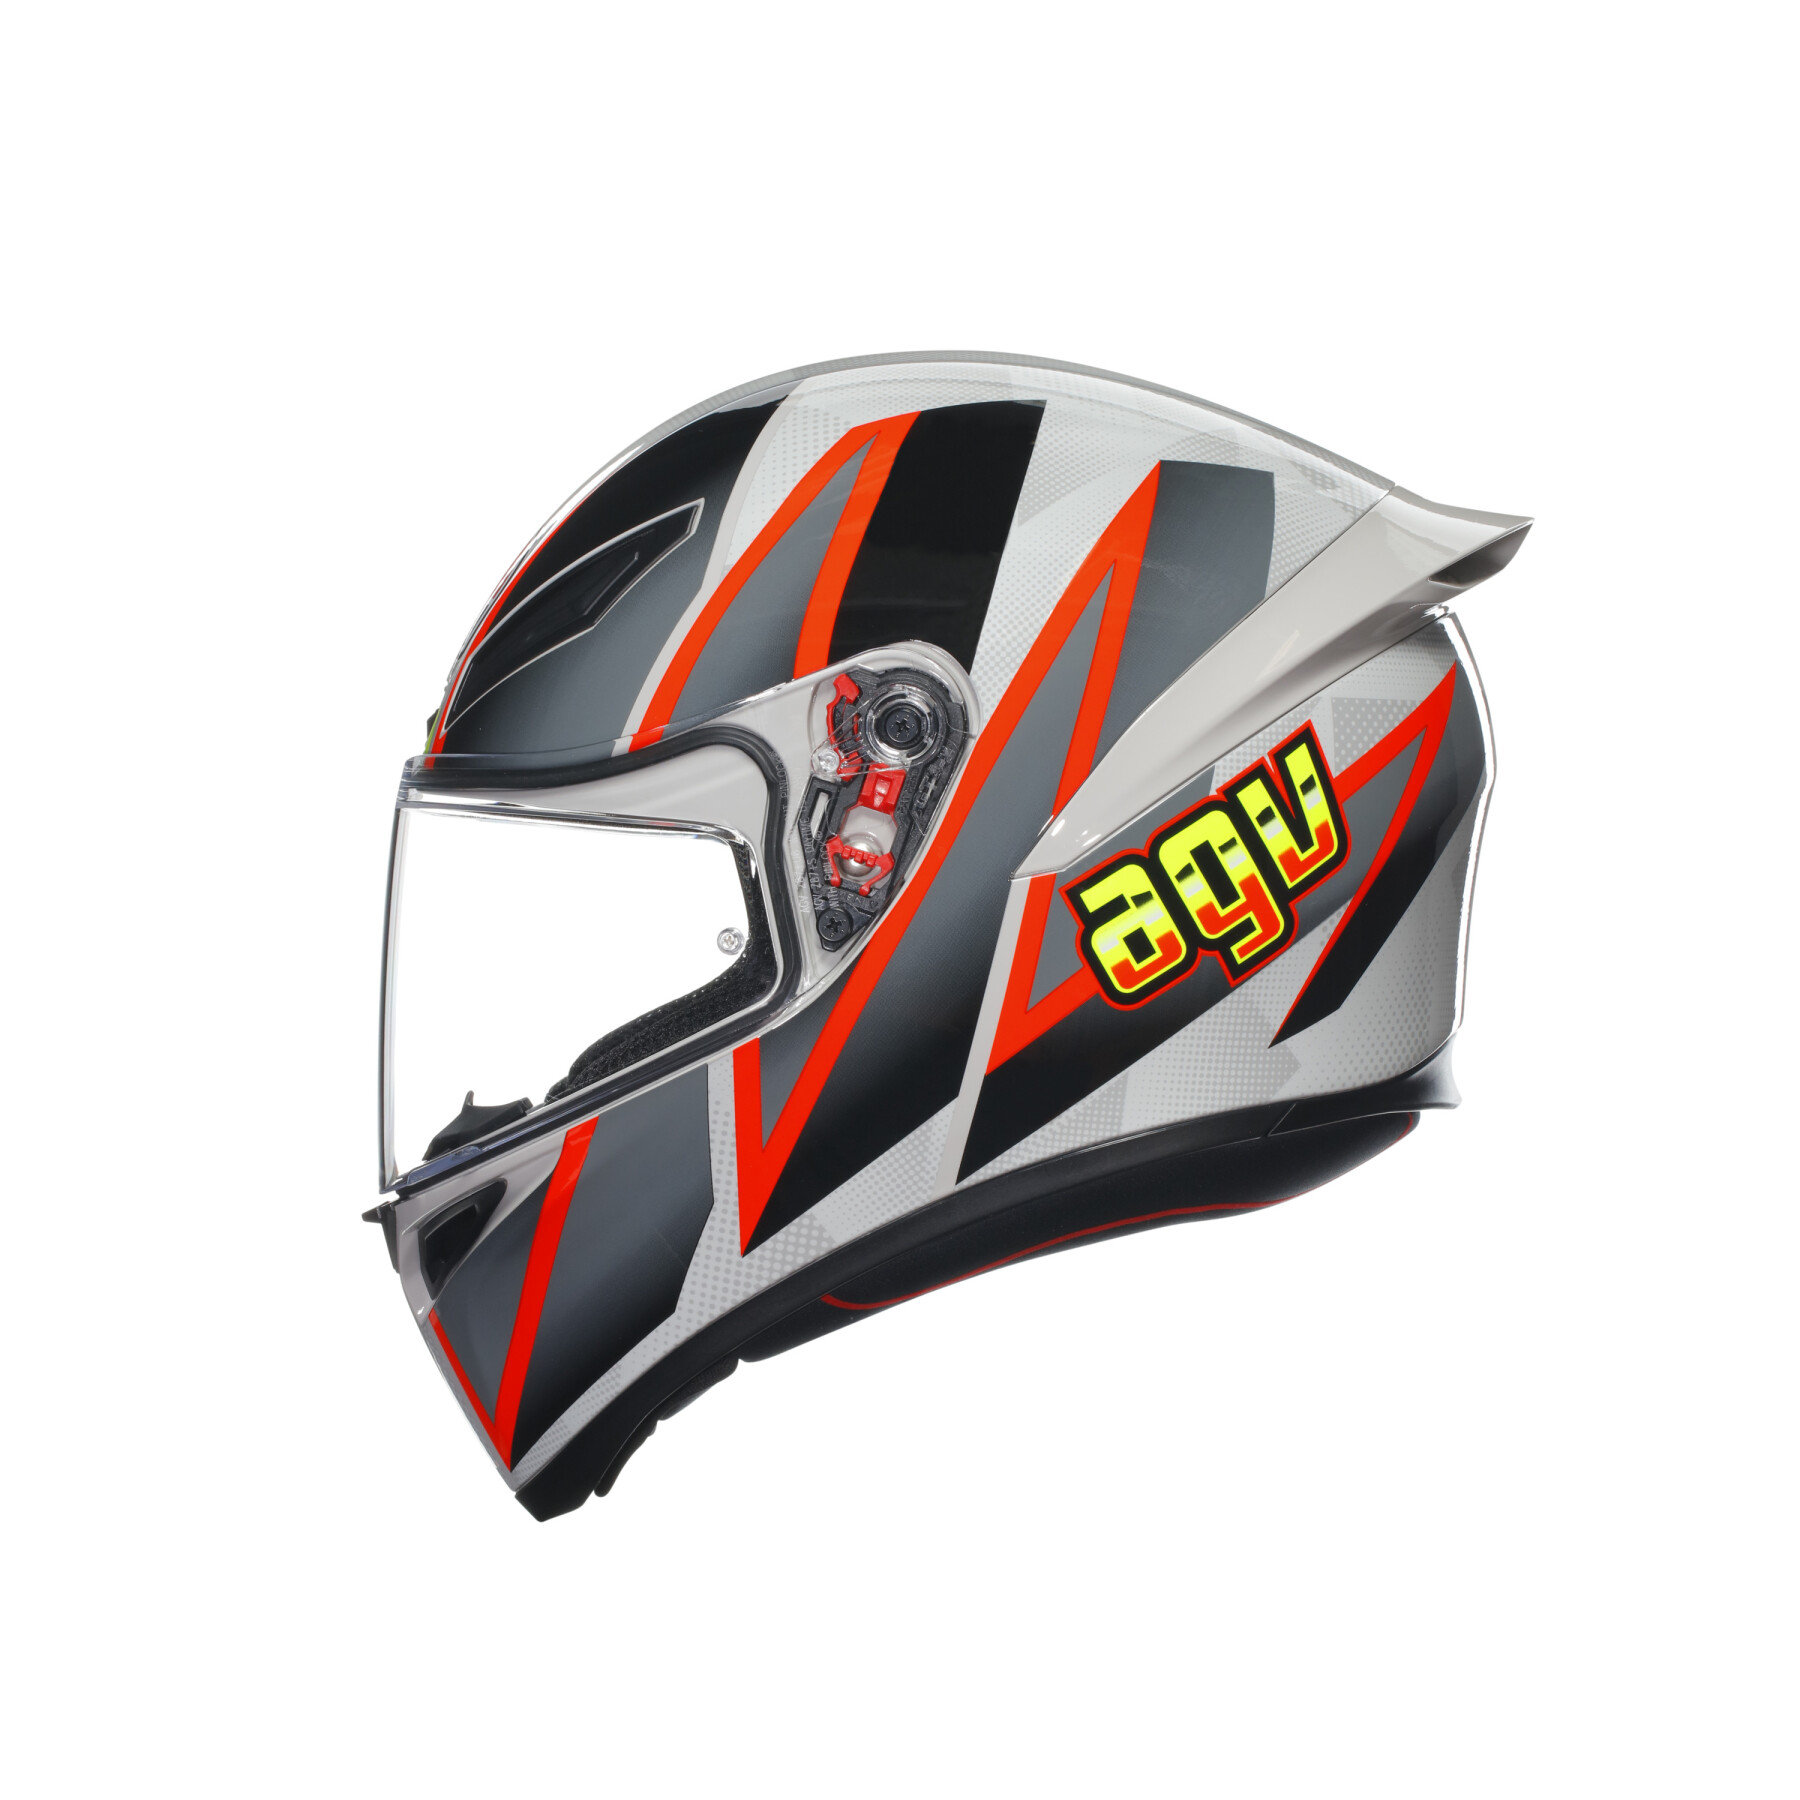 Full face motorcycle helmet AGV K1 S Blipper